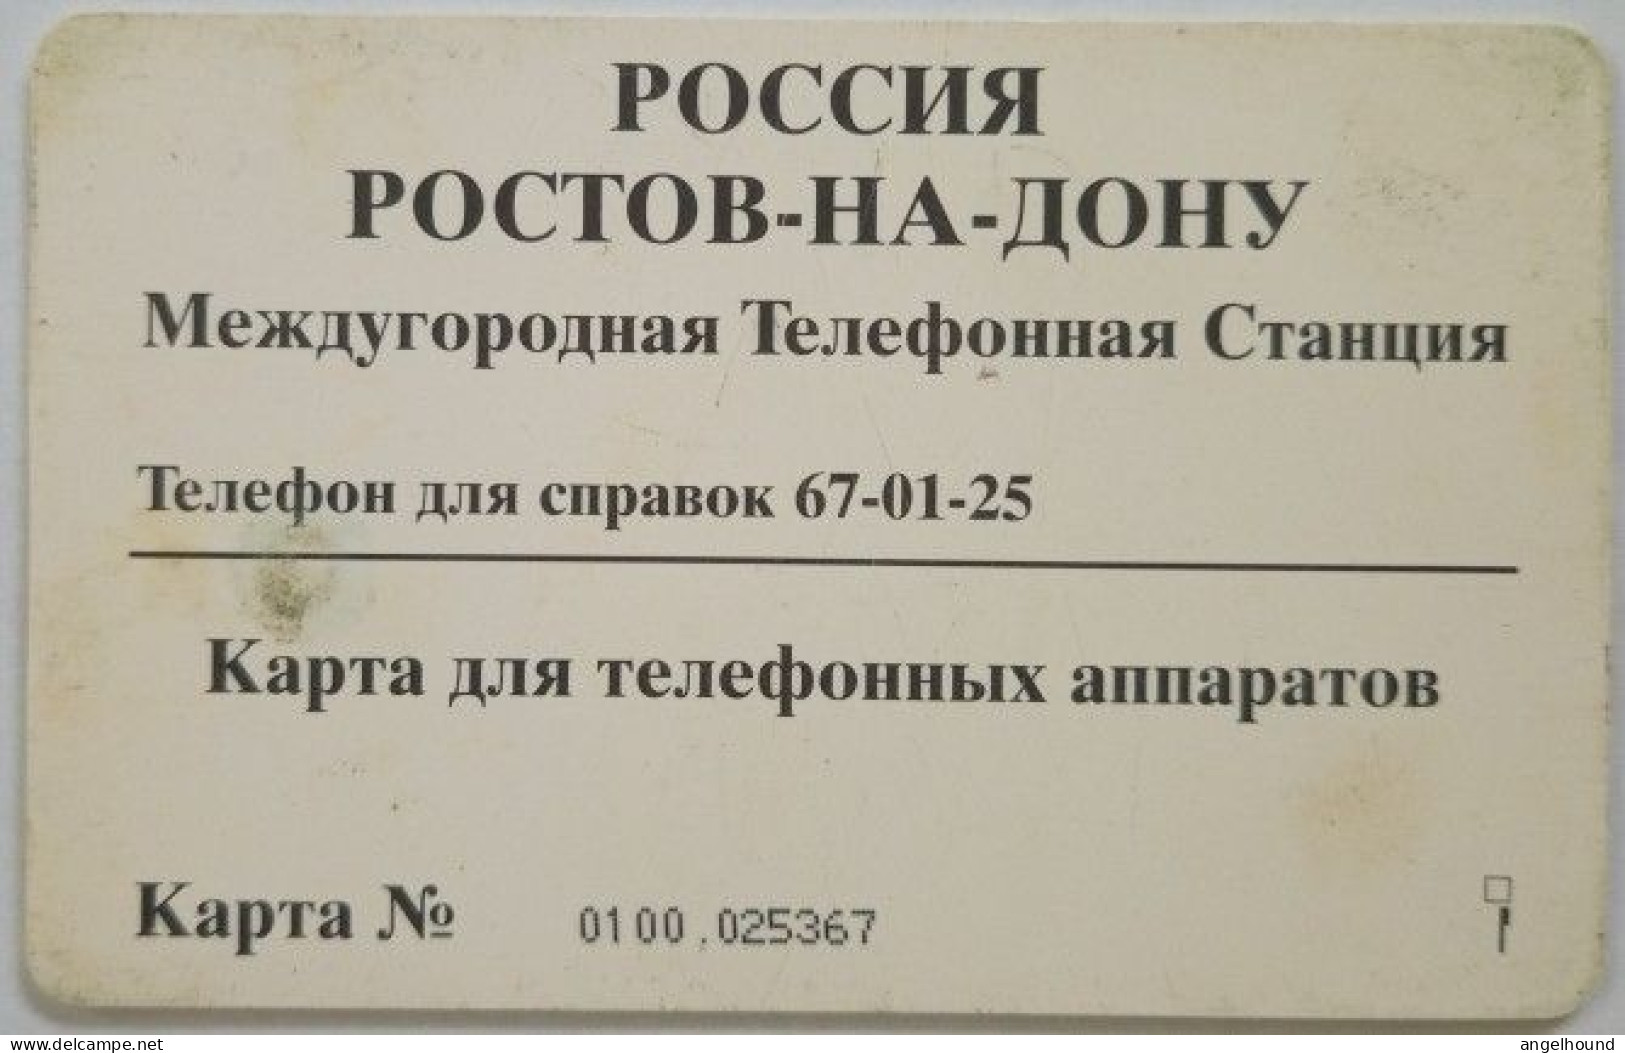 Russia 100.000 Rub. Chip Card - PMTC - Drama Theater - Russia